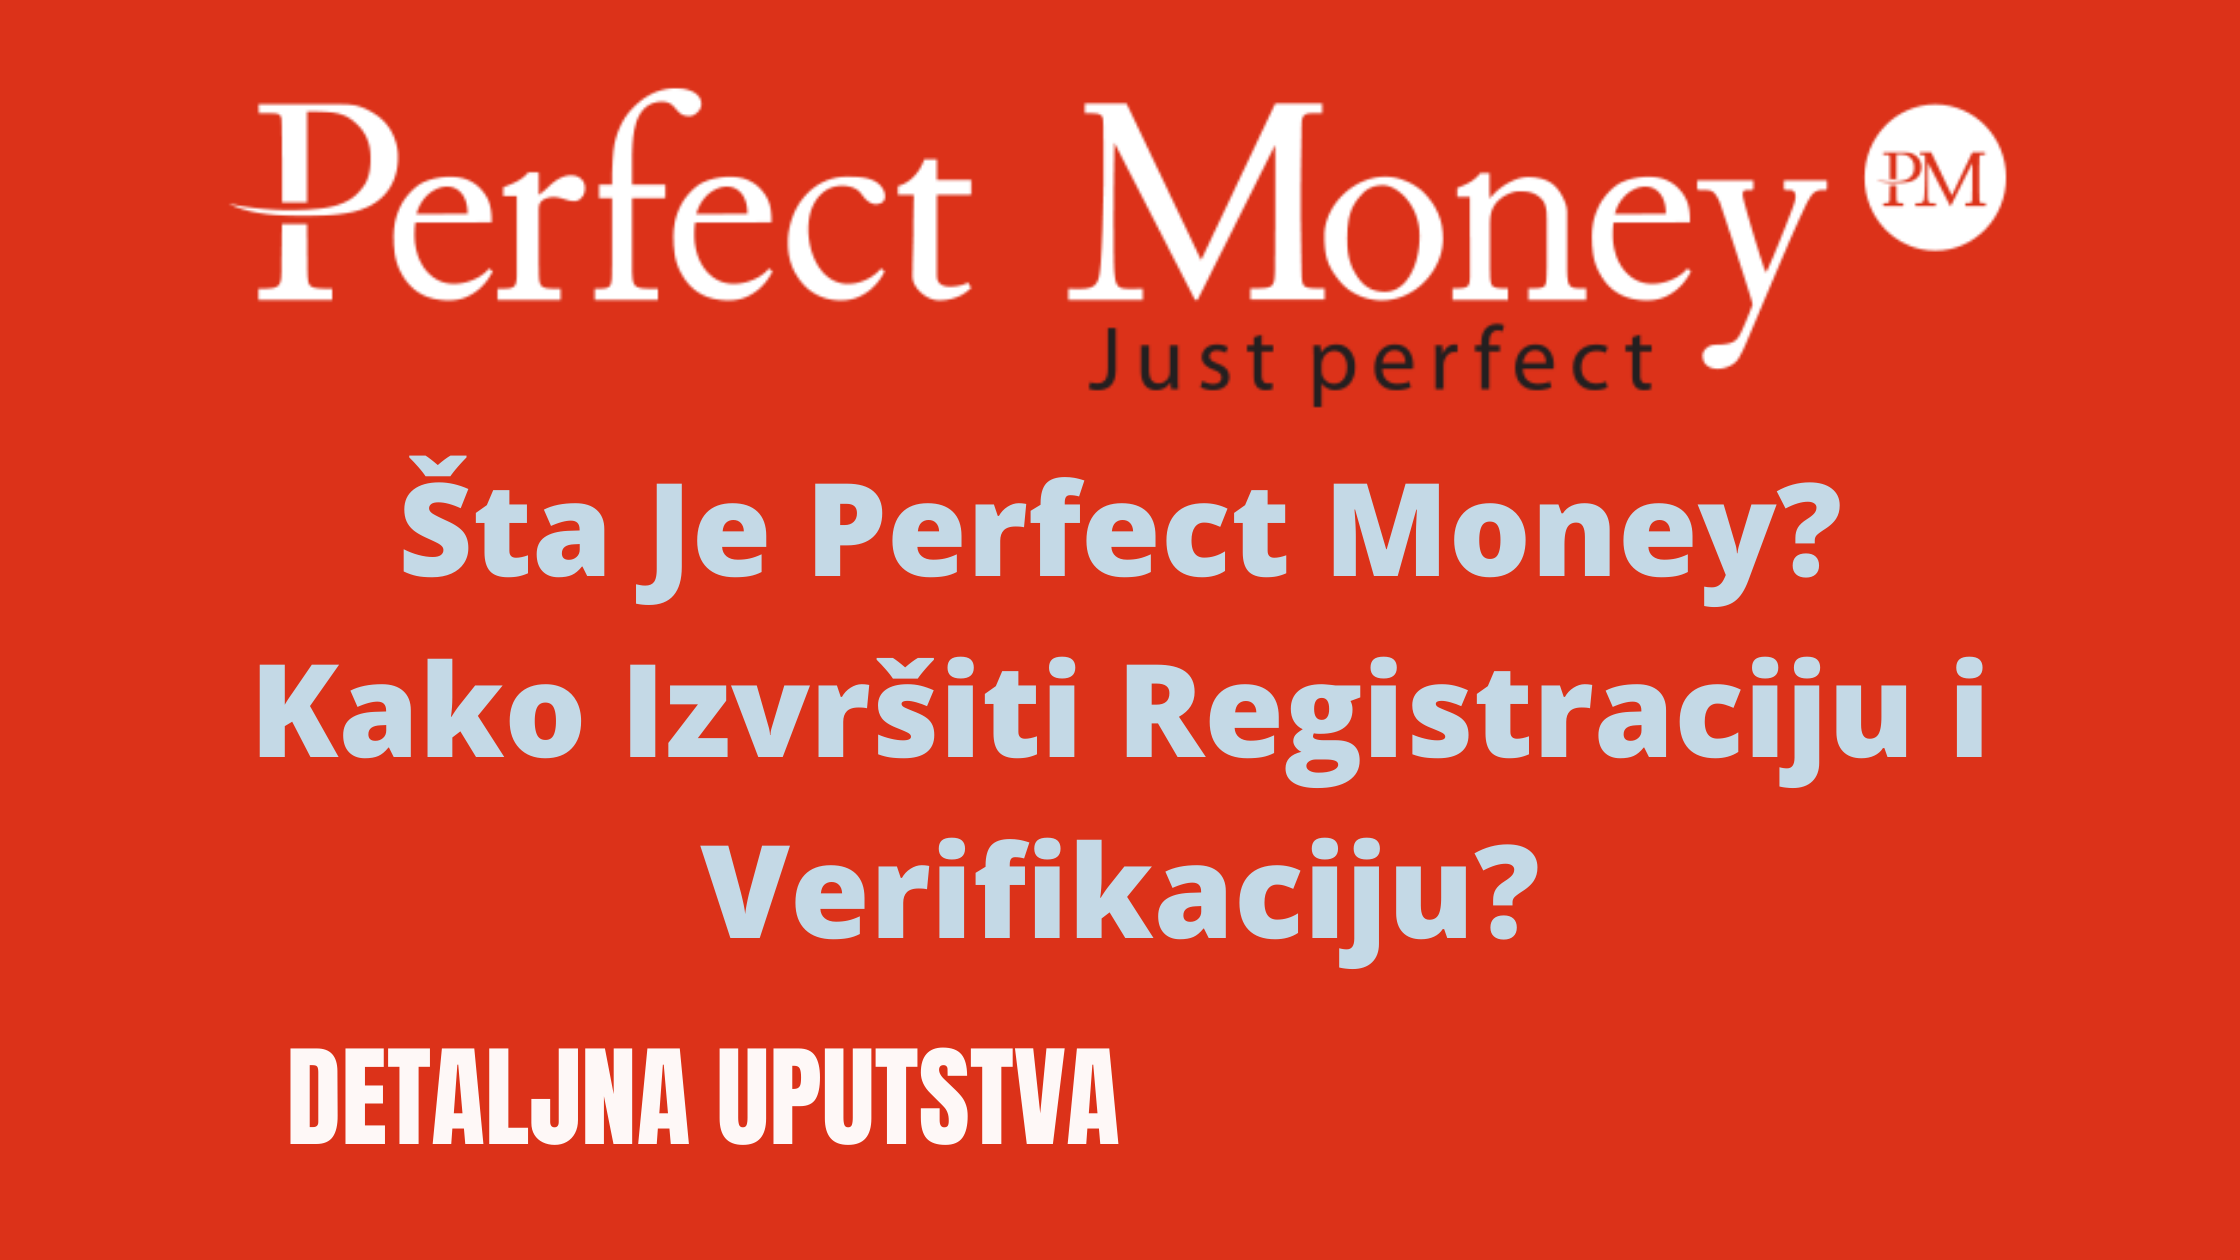 Zanima vas sta je Perfect Money i kako uraditi verifikaciju naloga. Zanima vas koliko je siguran i da li je Perfect Money prevara. Opisaću vam platformu, sve podatke kao i detaljno uputstvo za registraciju i verifikaciju naloga.